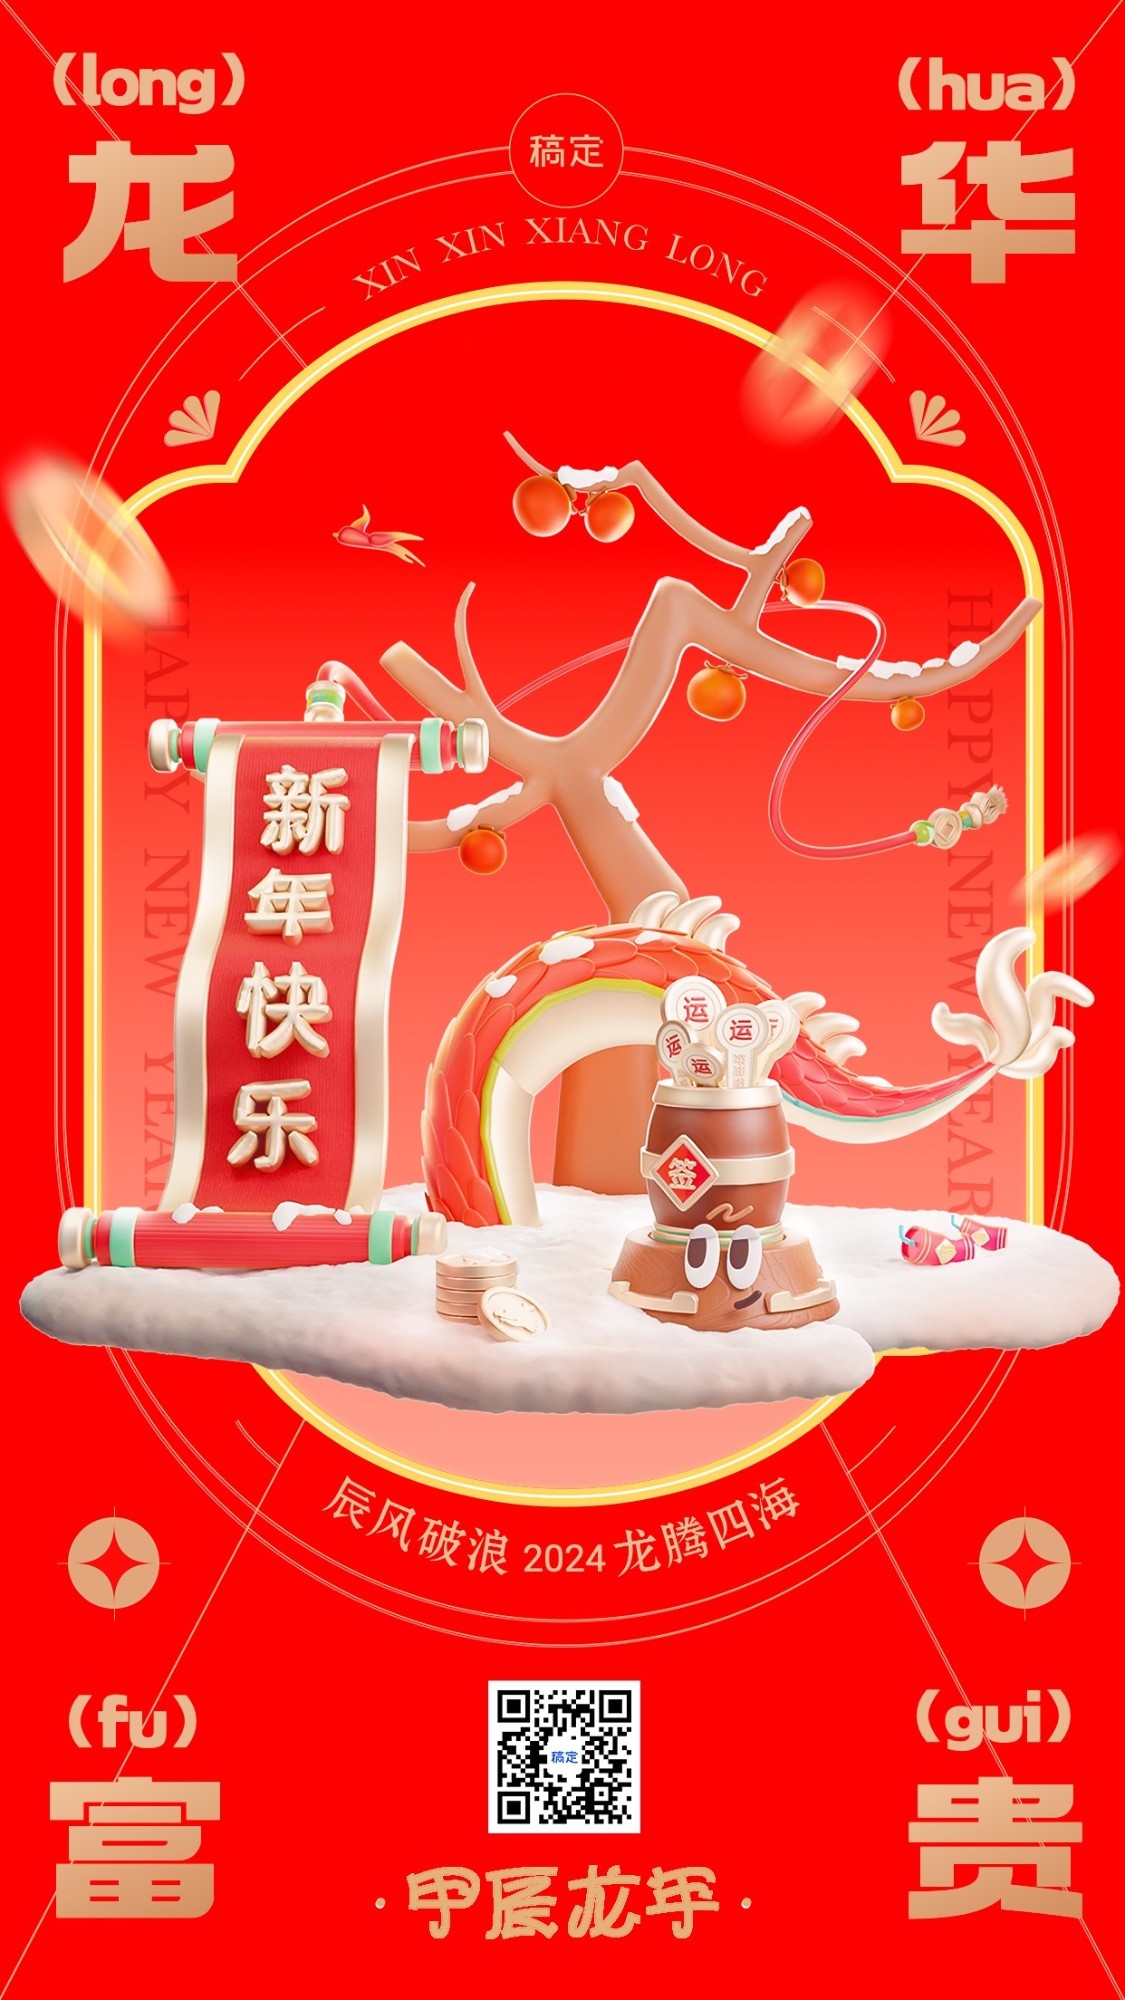 春节成语谐音梗节日祝福套系手机海报